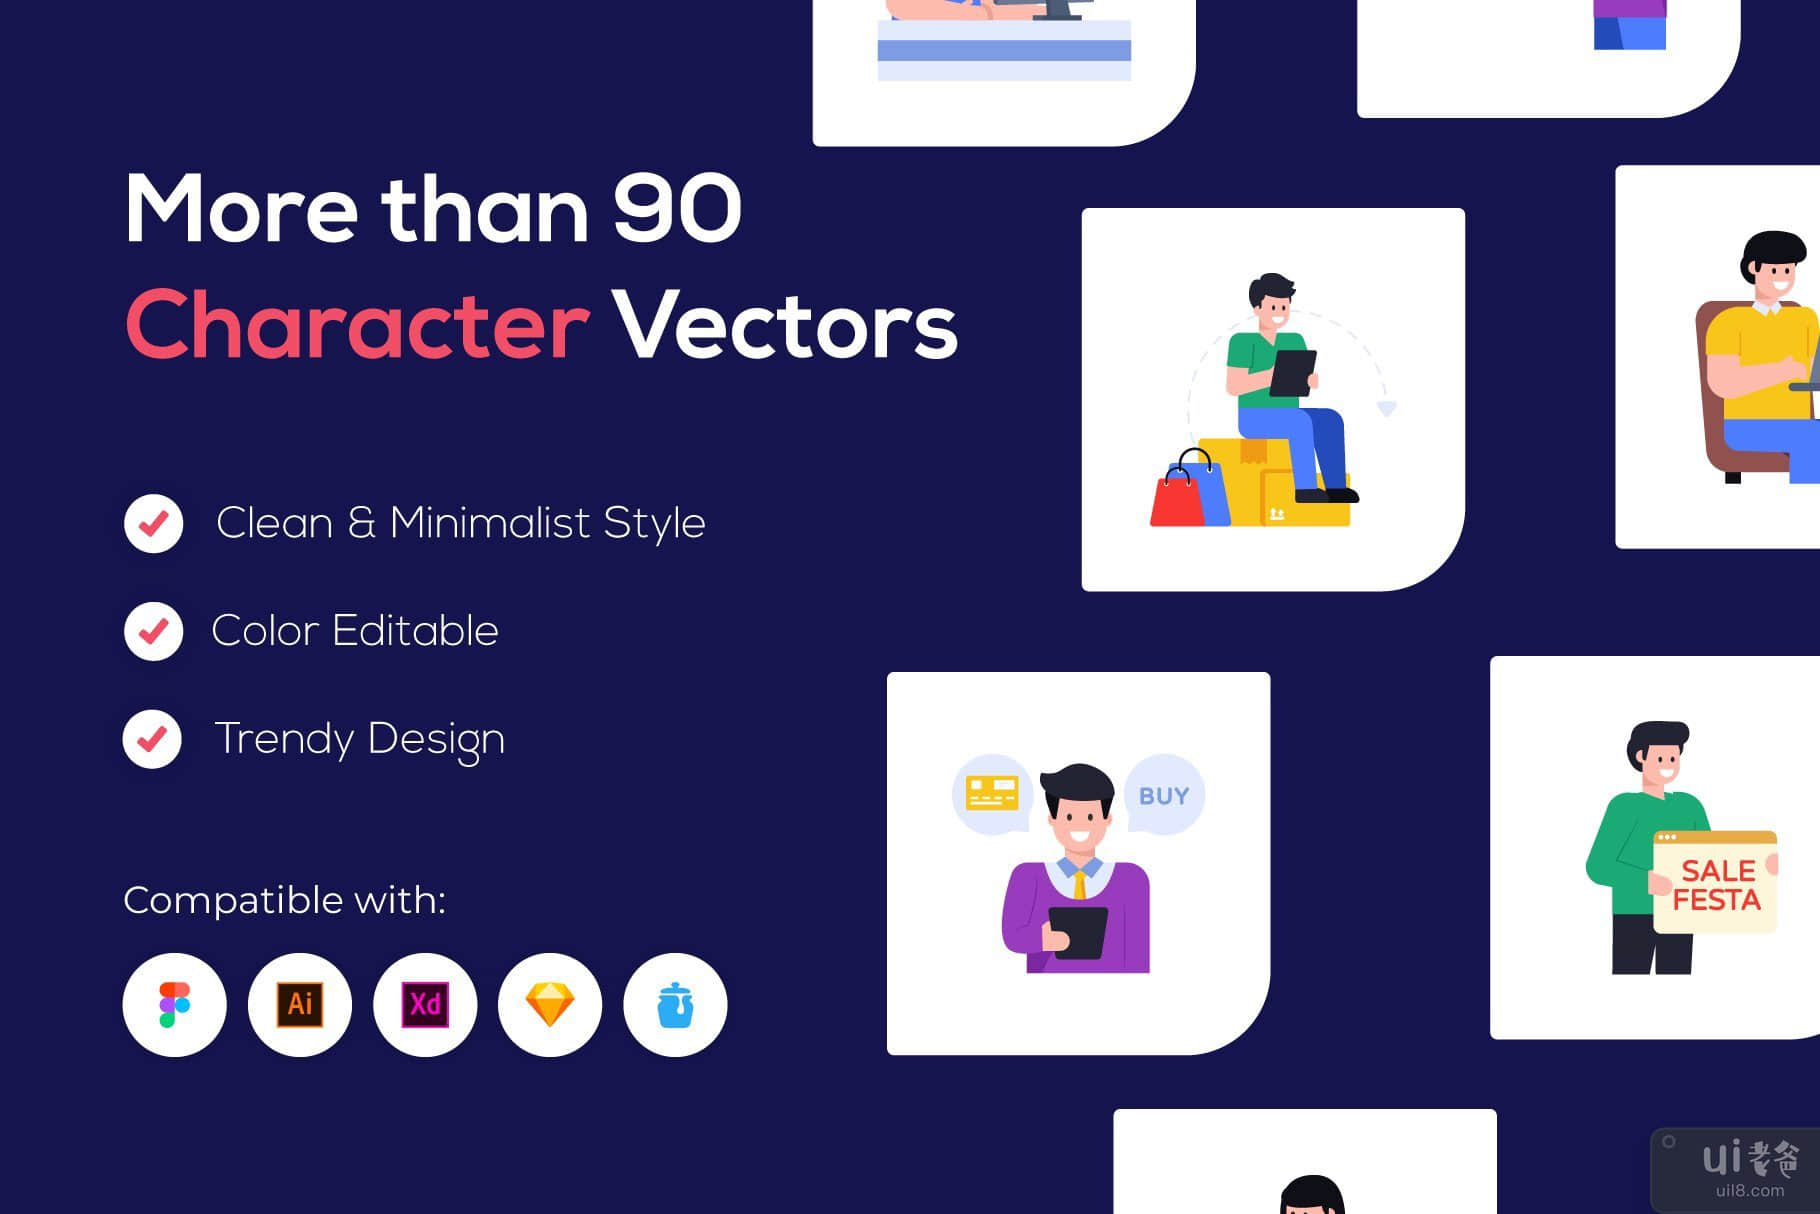 100 购物字符矢量图标(100 Shopping Character Vector Icons)插图6